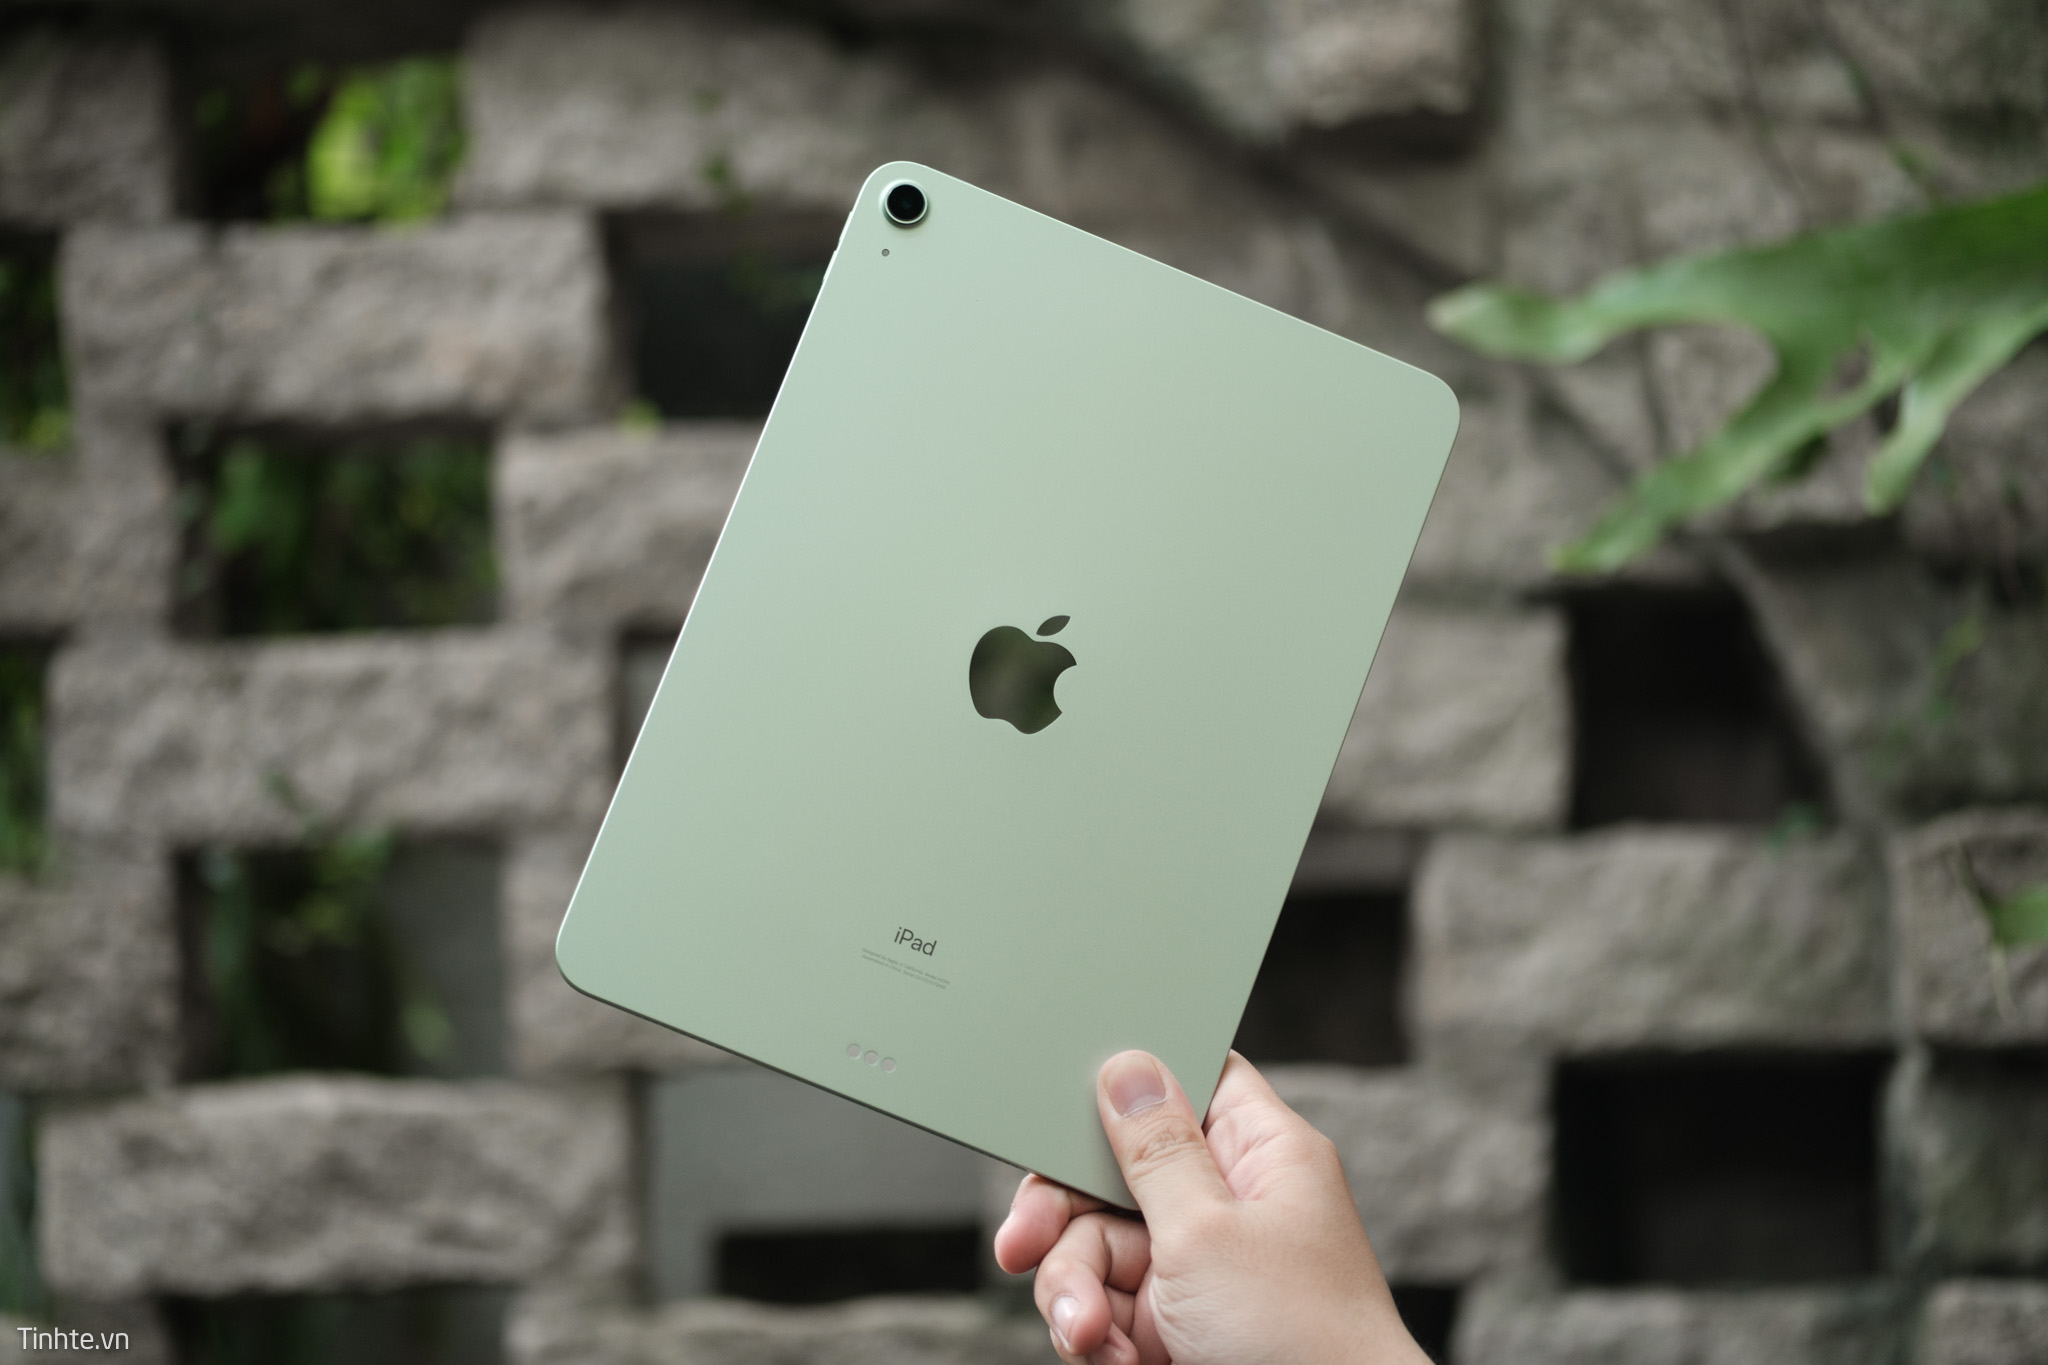 Tin đồn trước sự kiện: iPad Air mới sẽ sử dụng chip M1